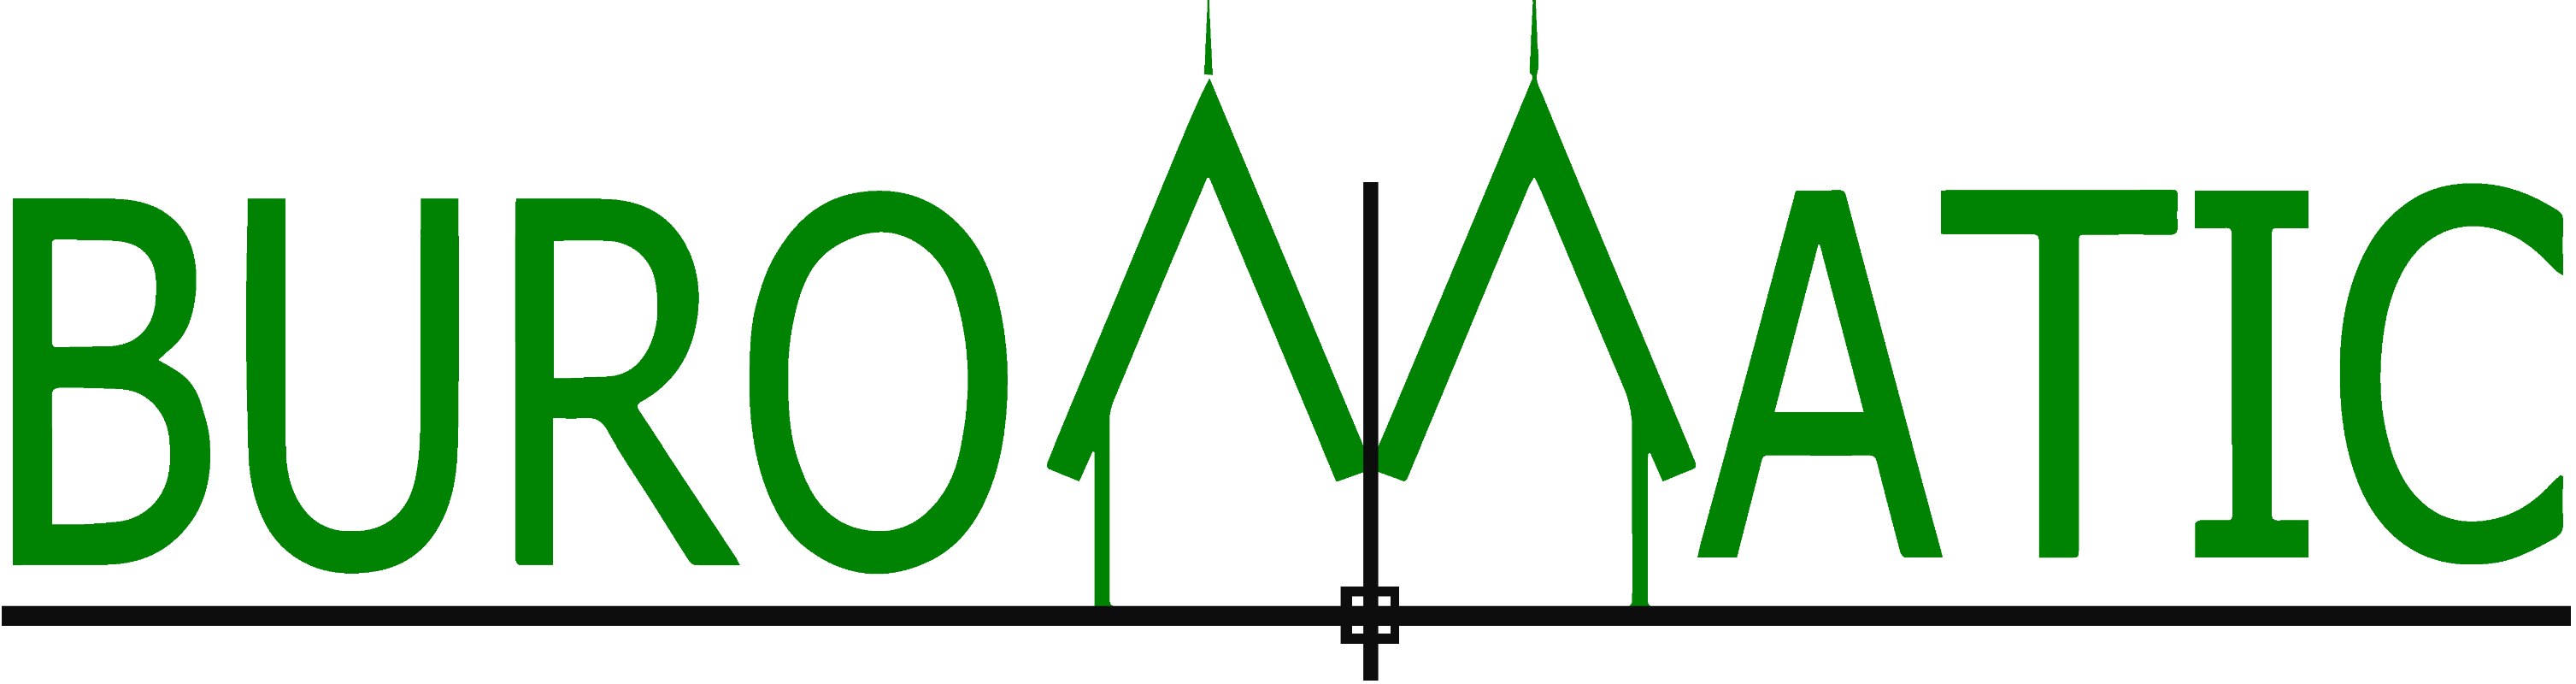 Buromatic Logo.png